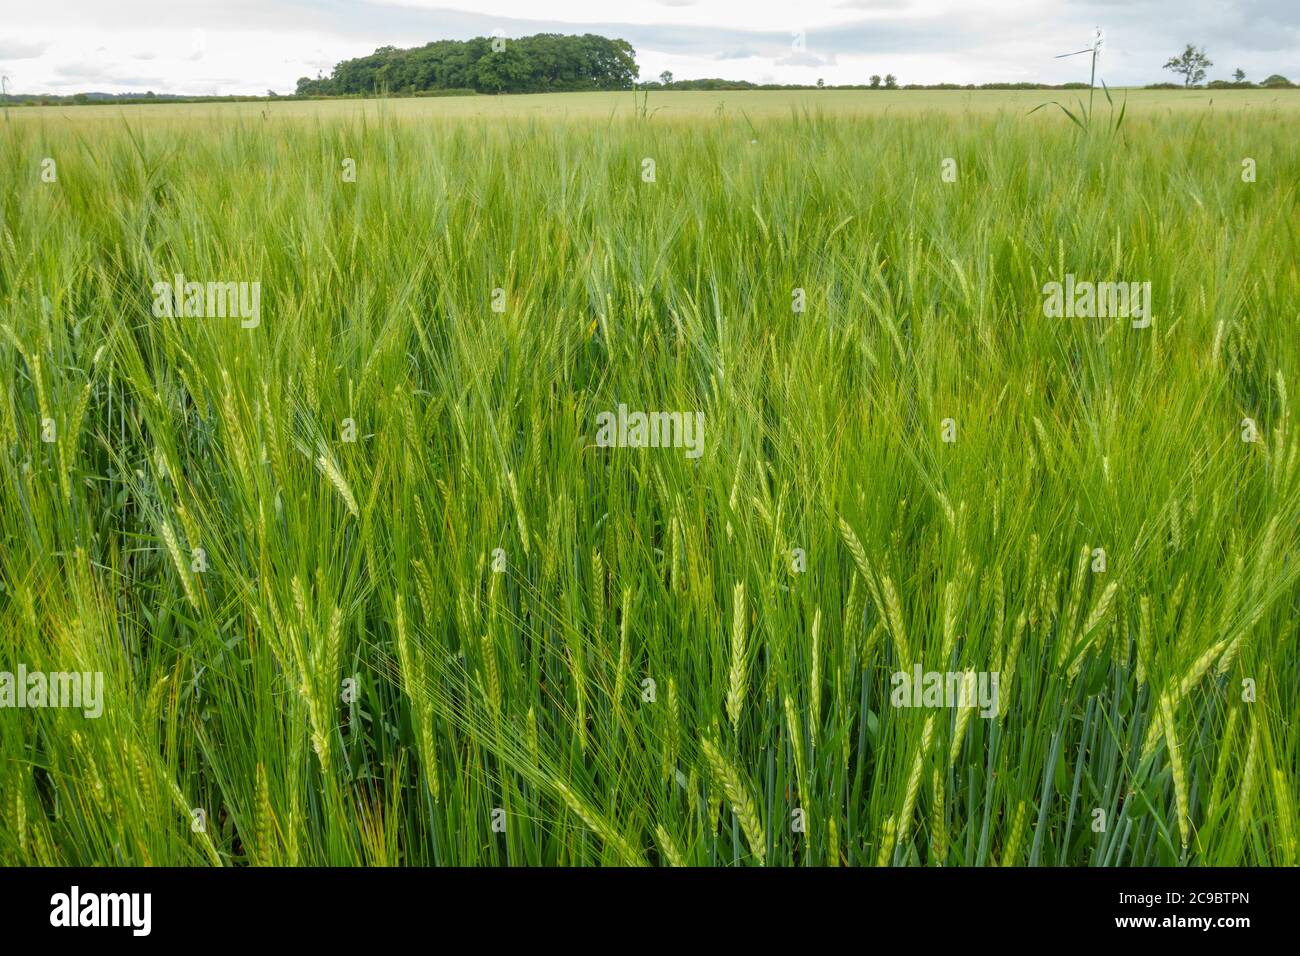 Gran campo de cultivo de cereales de cebada verde madurante (Hordeum vulgare) que crece en el campo de Leicestershire que muestra orejas, espigas y granos, Inglaterra, Reino Unido Foto de stock